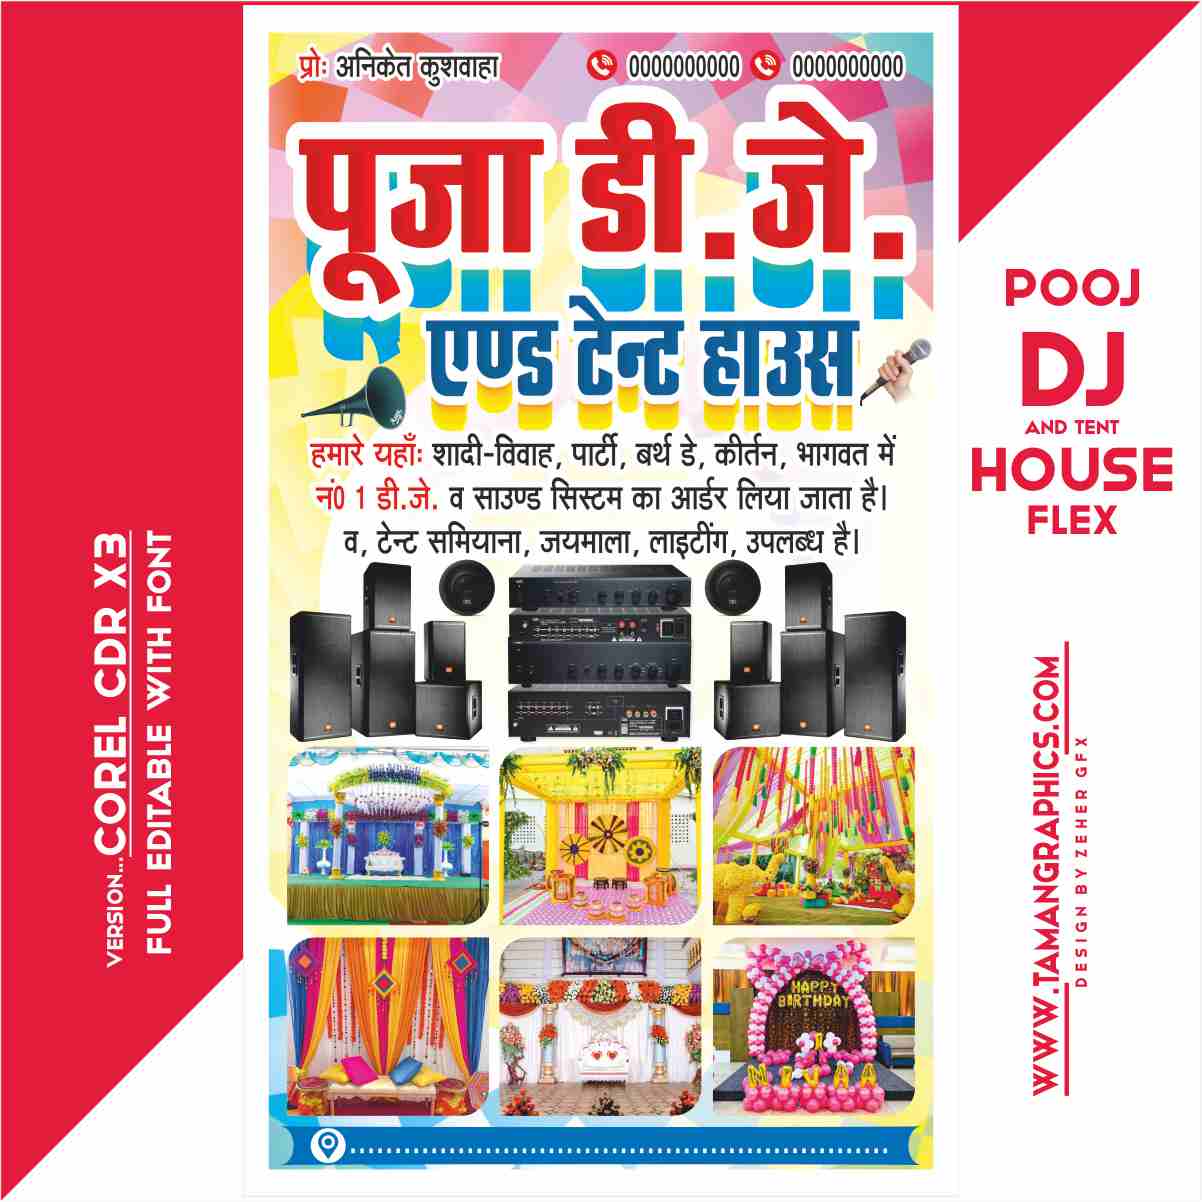 Pooja Dj And Tent House Pamphlet Poster Design Cdr File FLEX BANNER DJ BANNER